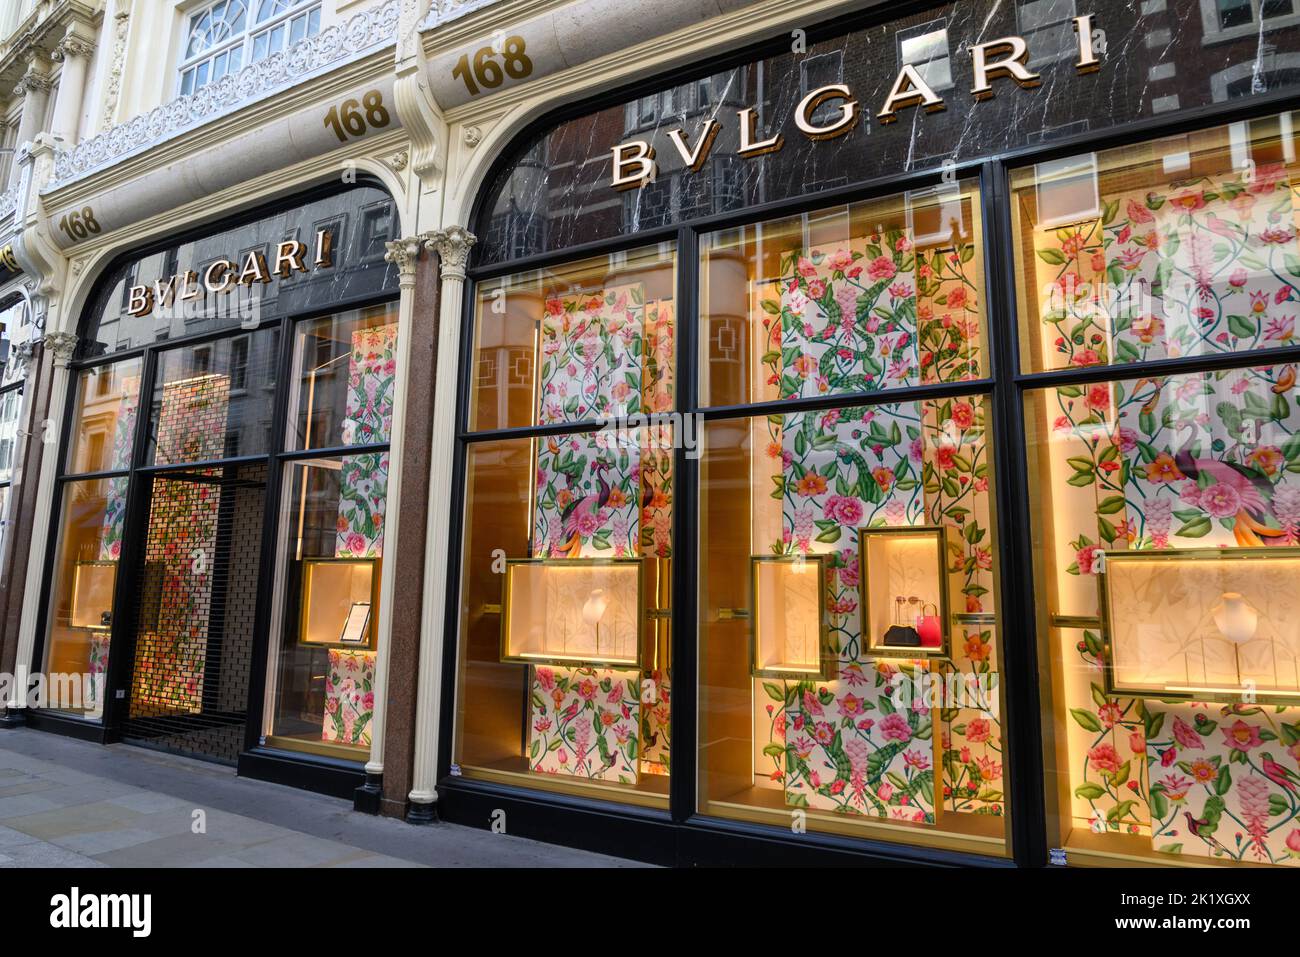 BVLGARI Italian jewellery store, New Bond Street, London, UK Stock Photo